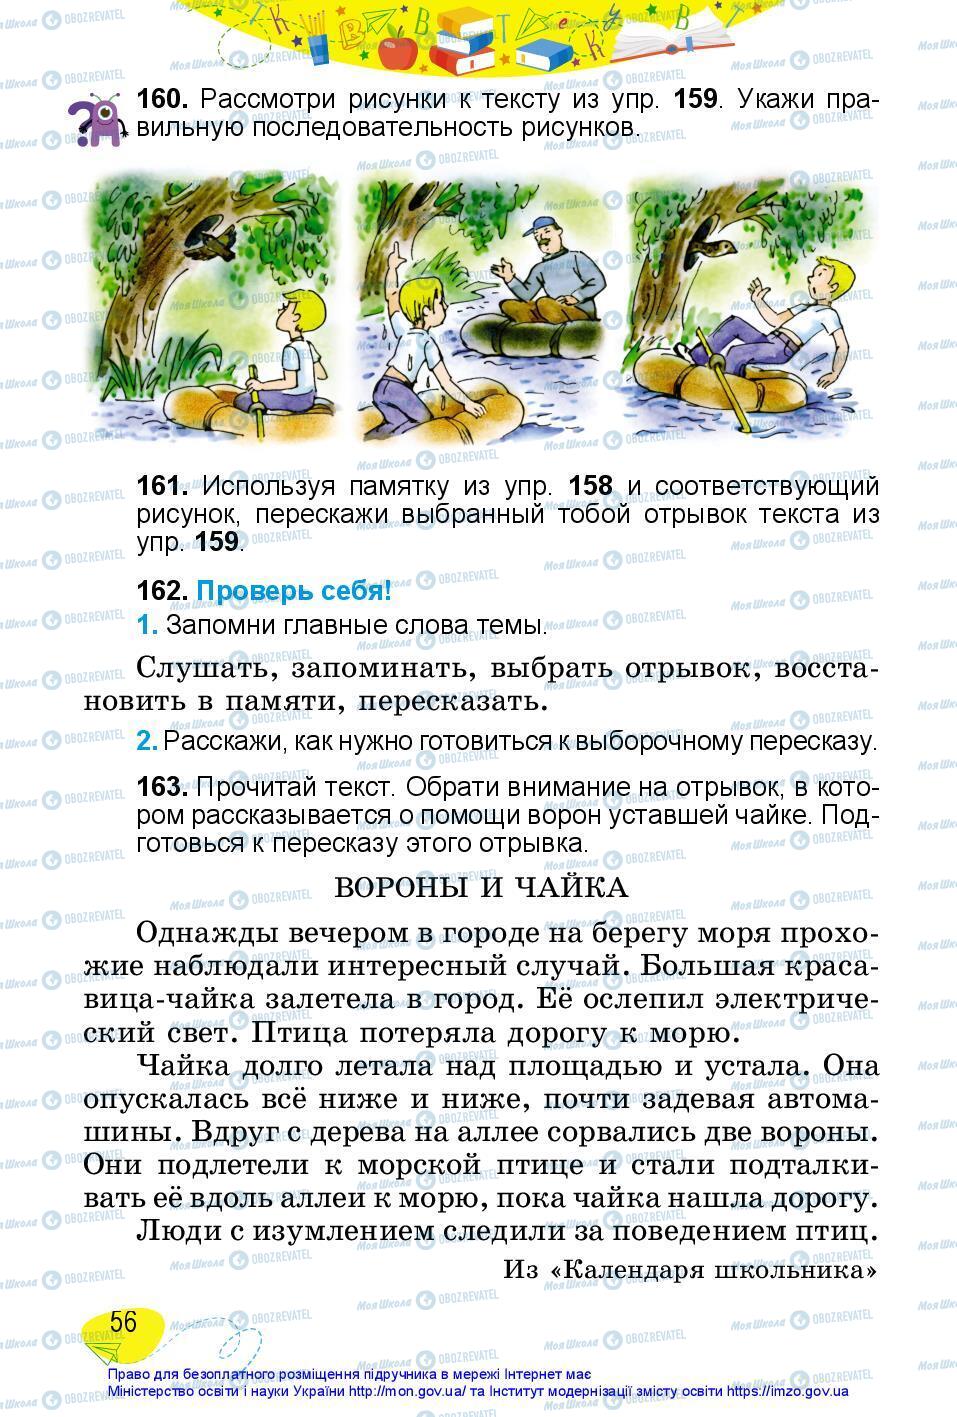 Підручники Російська мова 3 клас сторінка 56